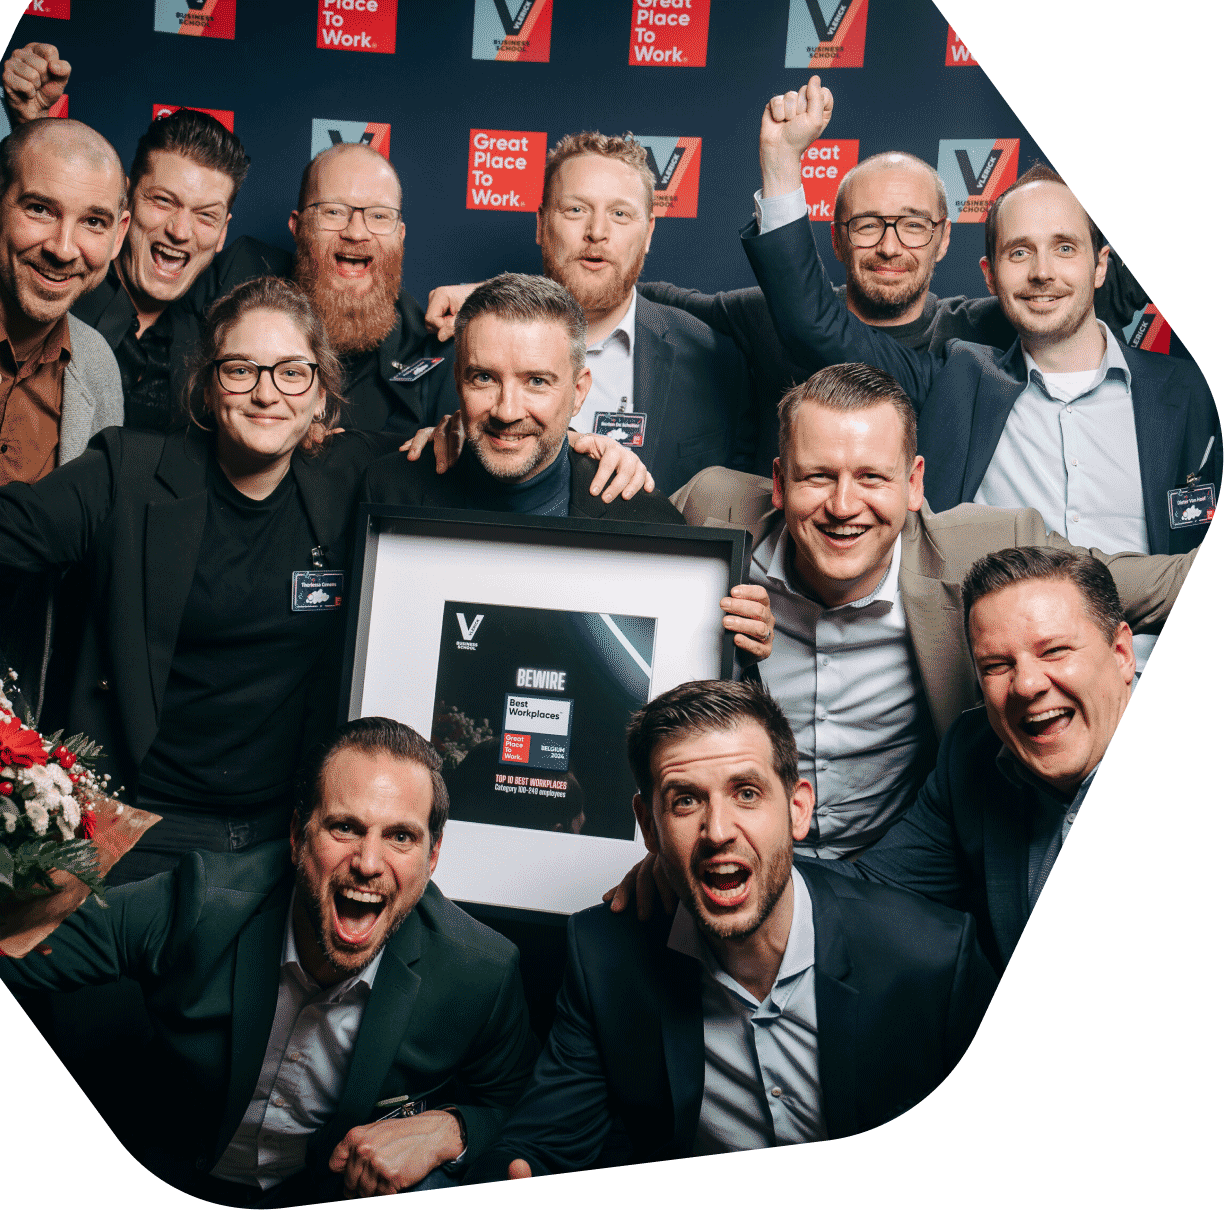 The Bewire management team met hun verkregen certificaat op de Great Place To Work award show